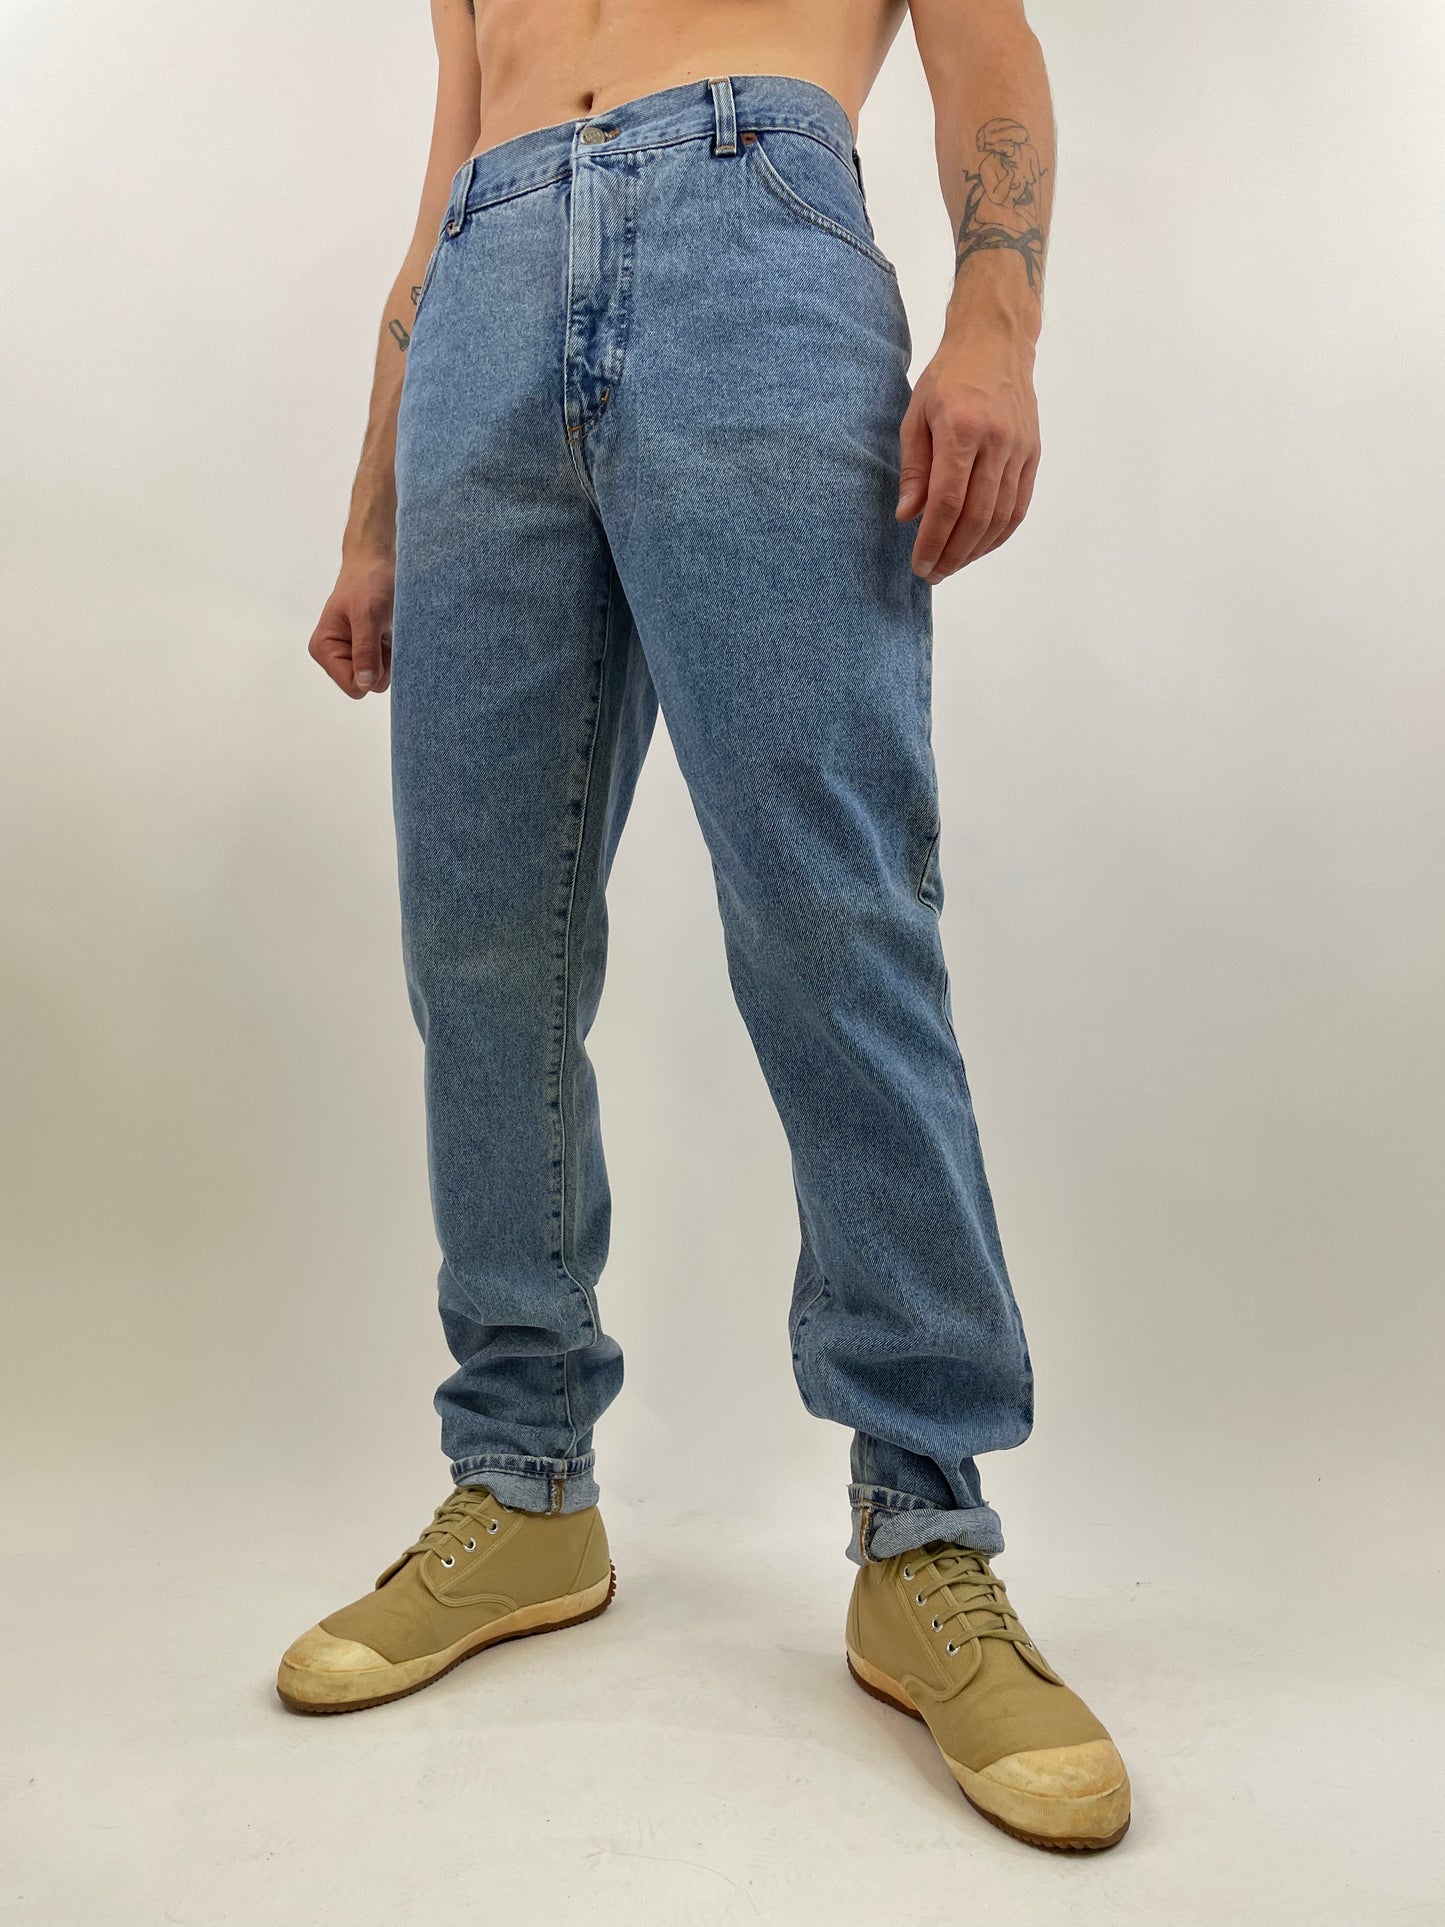 Jeans Metropolitan